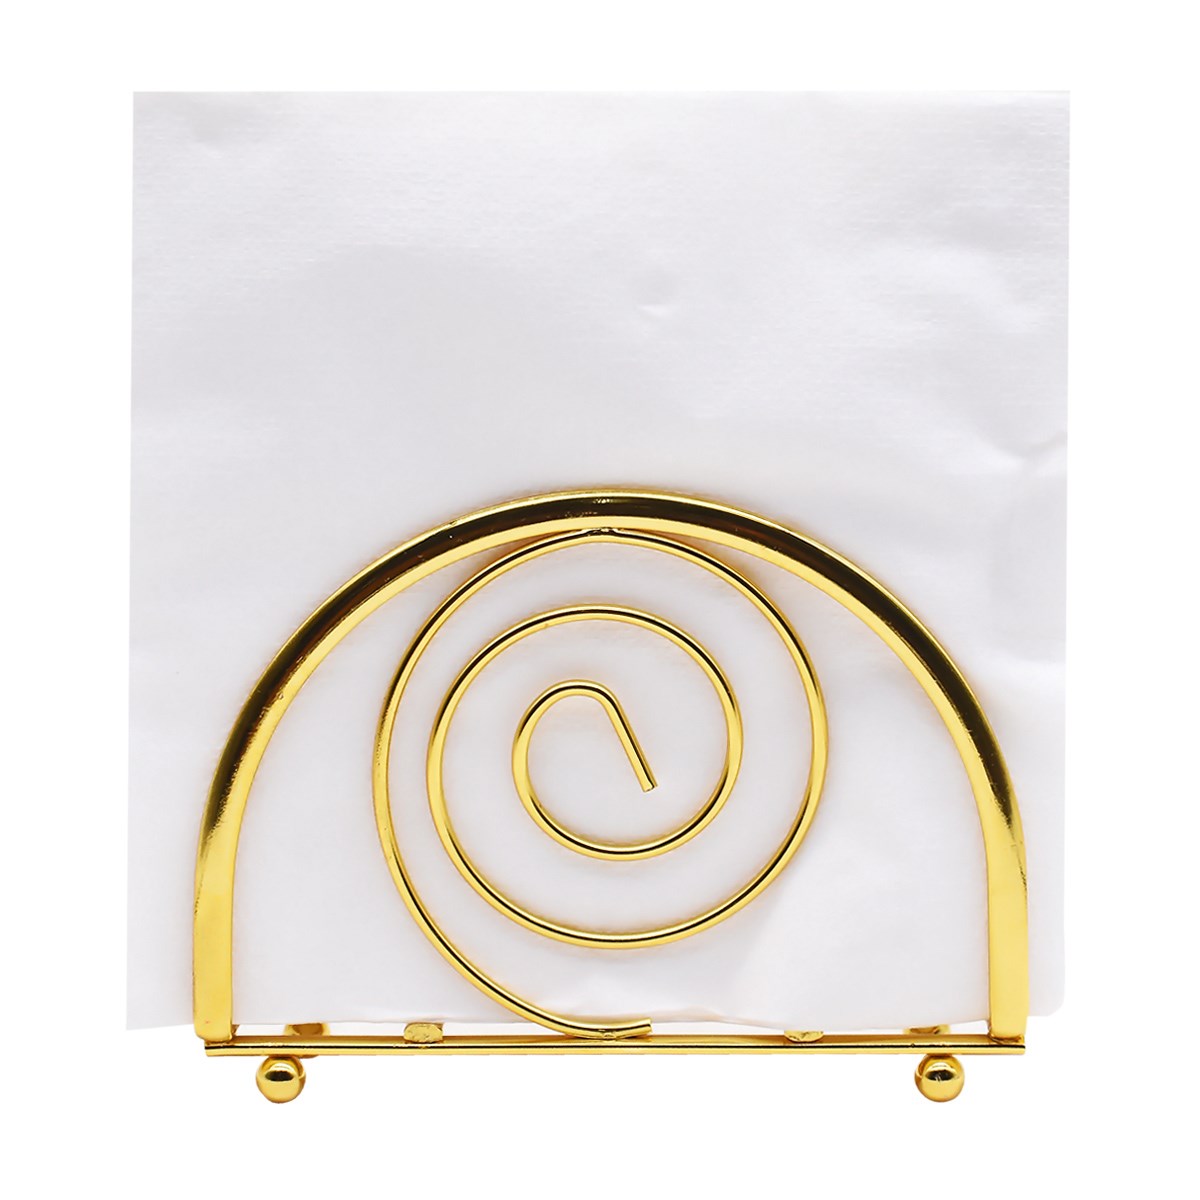 Metal Freestanding Tissue Paper, Napkin Holder for Home & Office, Gold (8762)